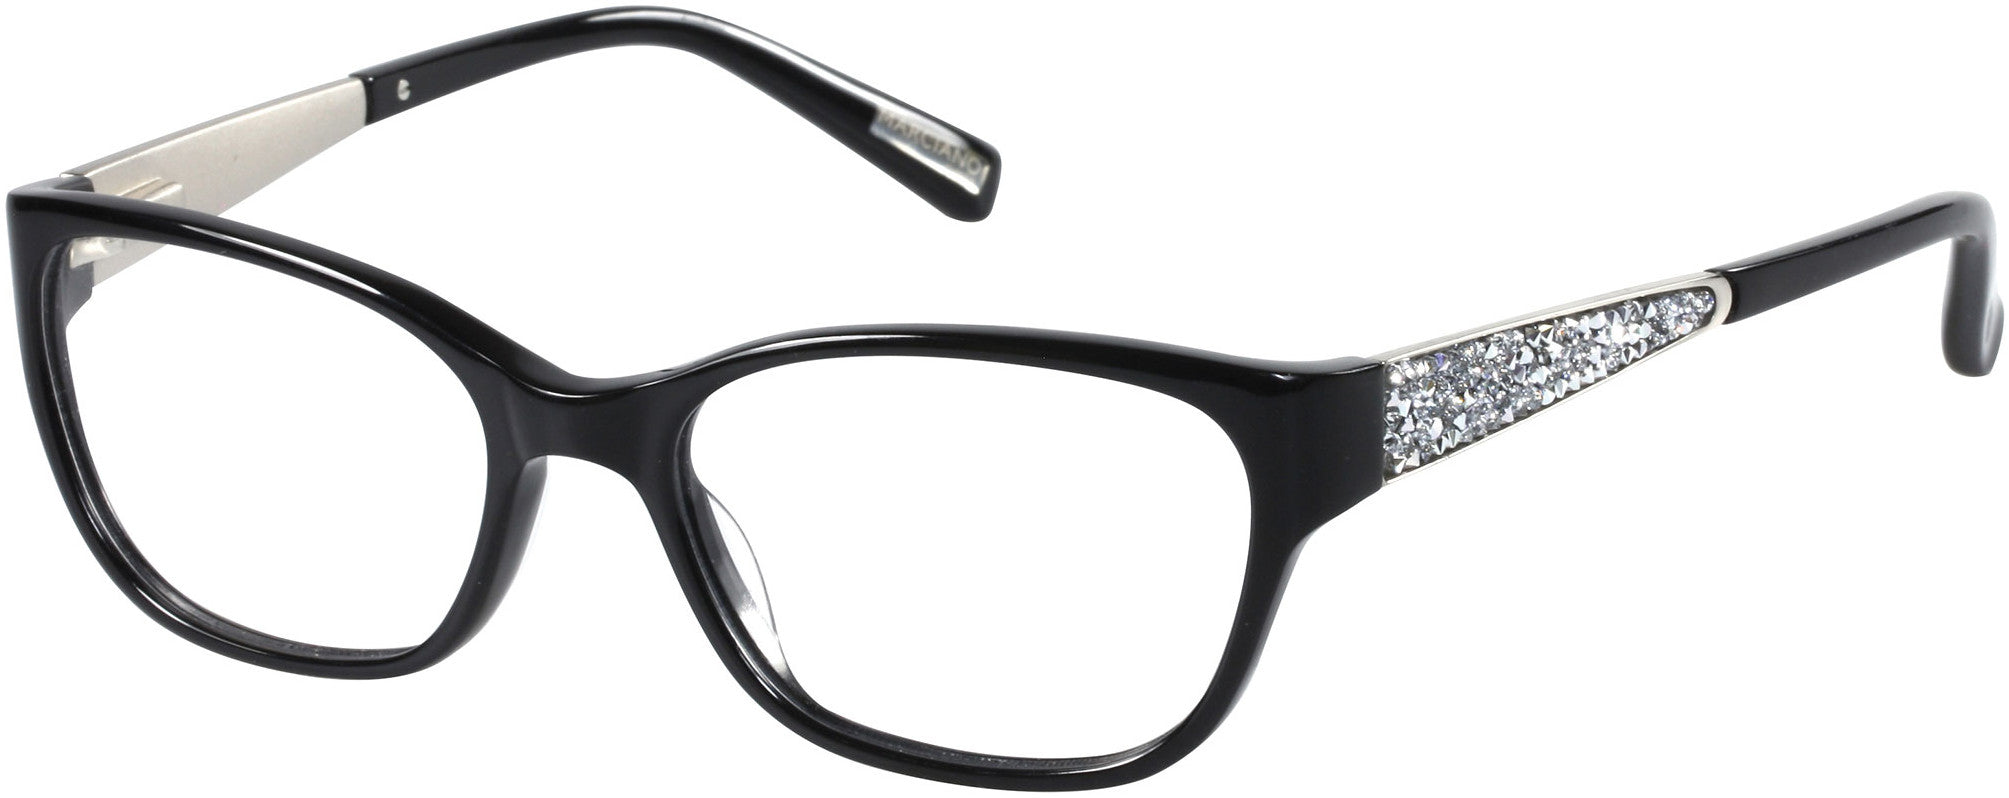 Guess By Marciano GM0243 Square Eyeglasses B84-B84 - Black